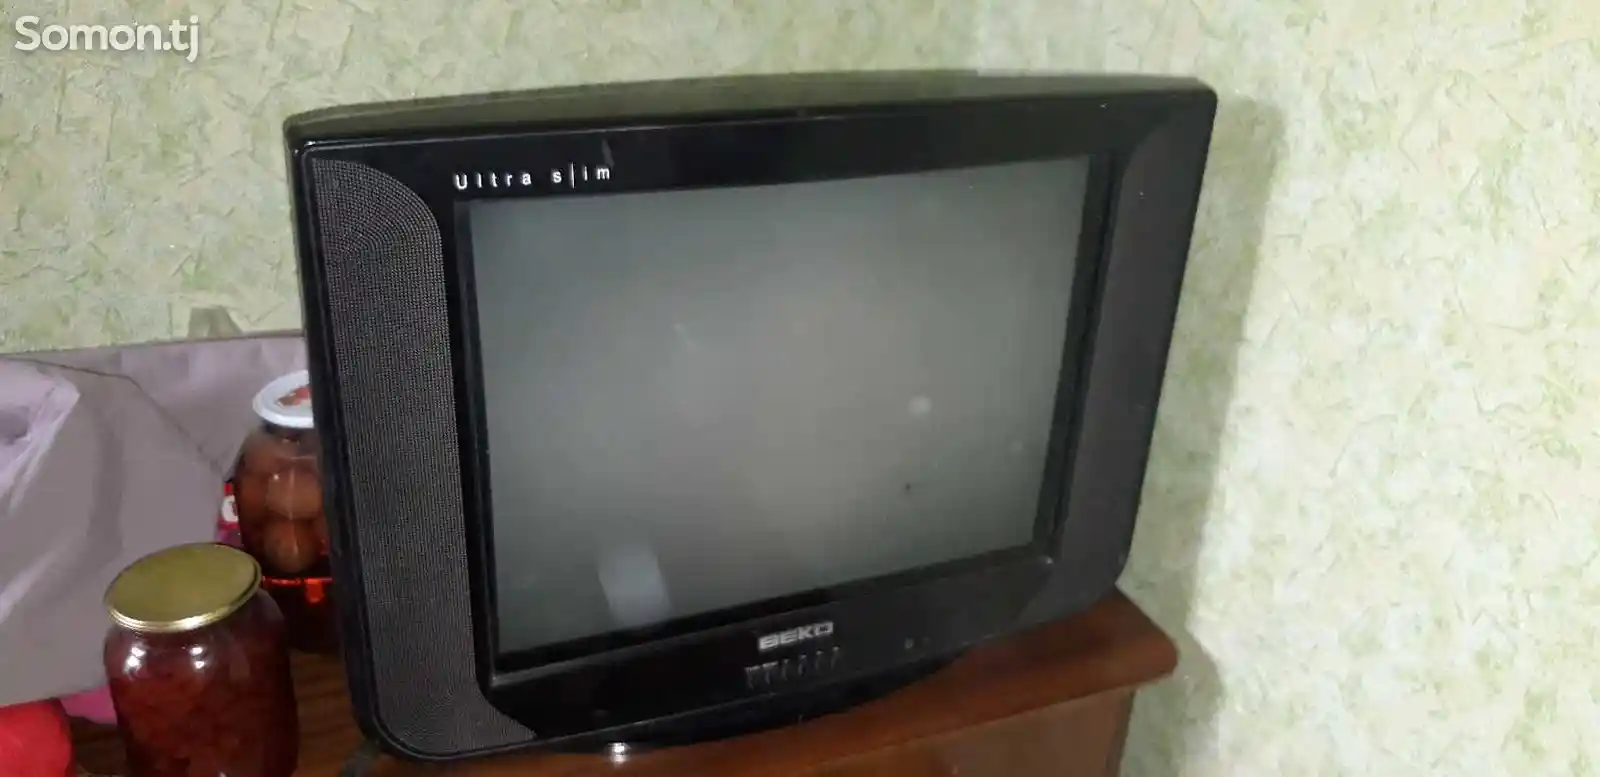 Телевизор Bеко-4